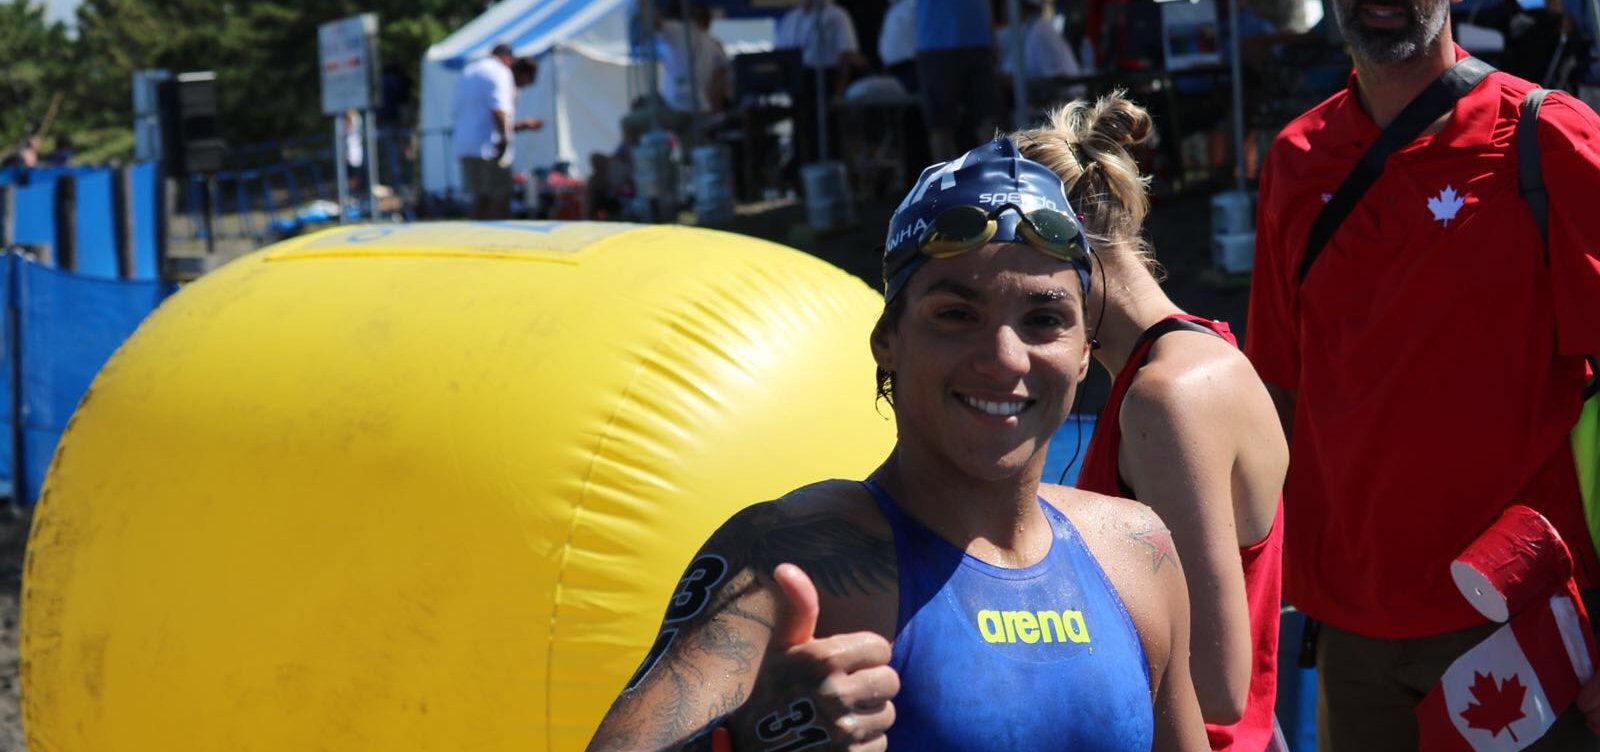 Ana Marcela conquista medalha de bronze na maratona aquática do Pan-Pacífico